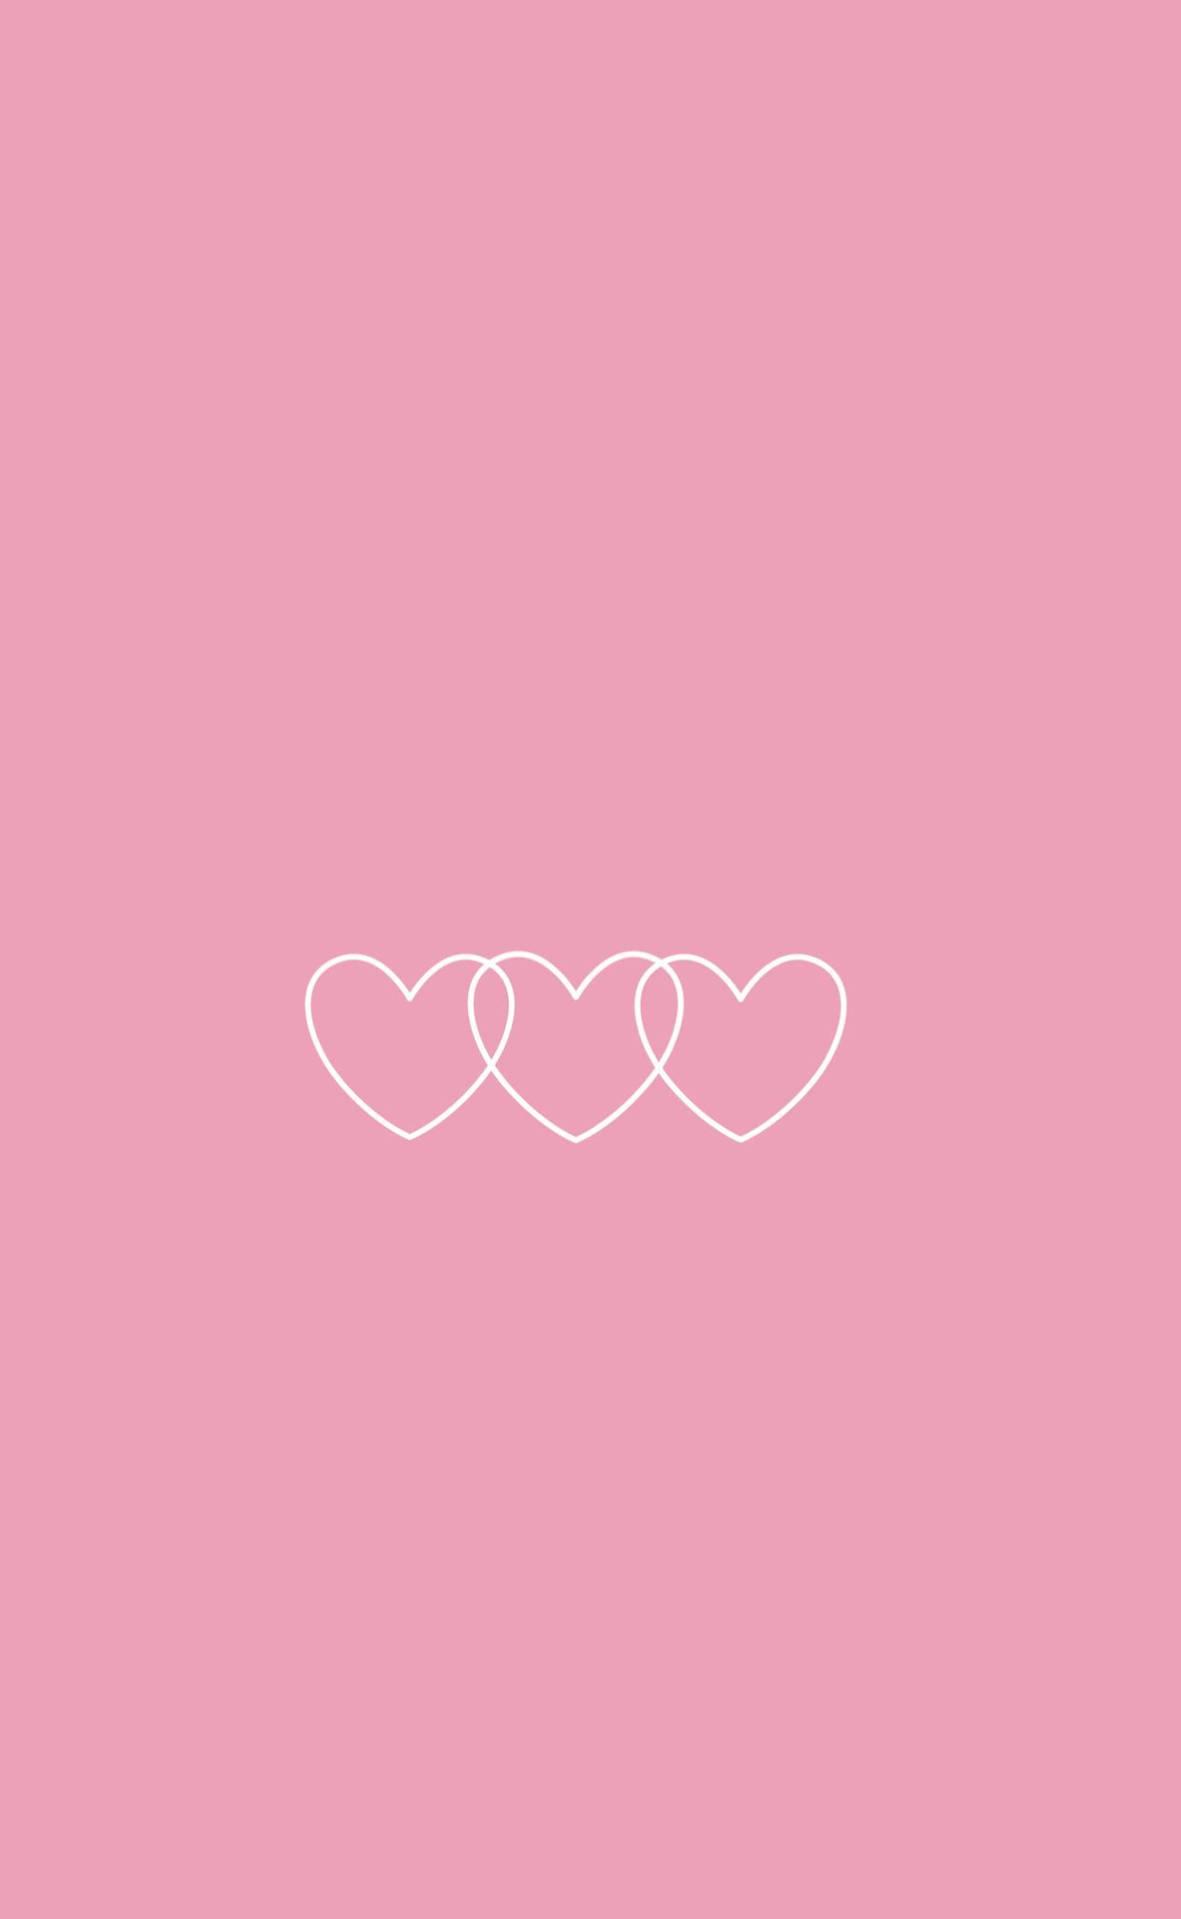 Cute And Pink Little Heart Patterns Wallpaper